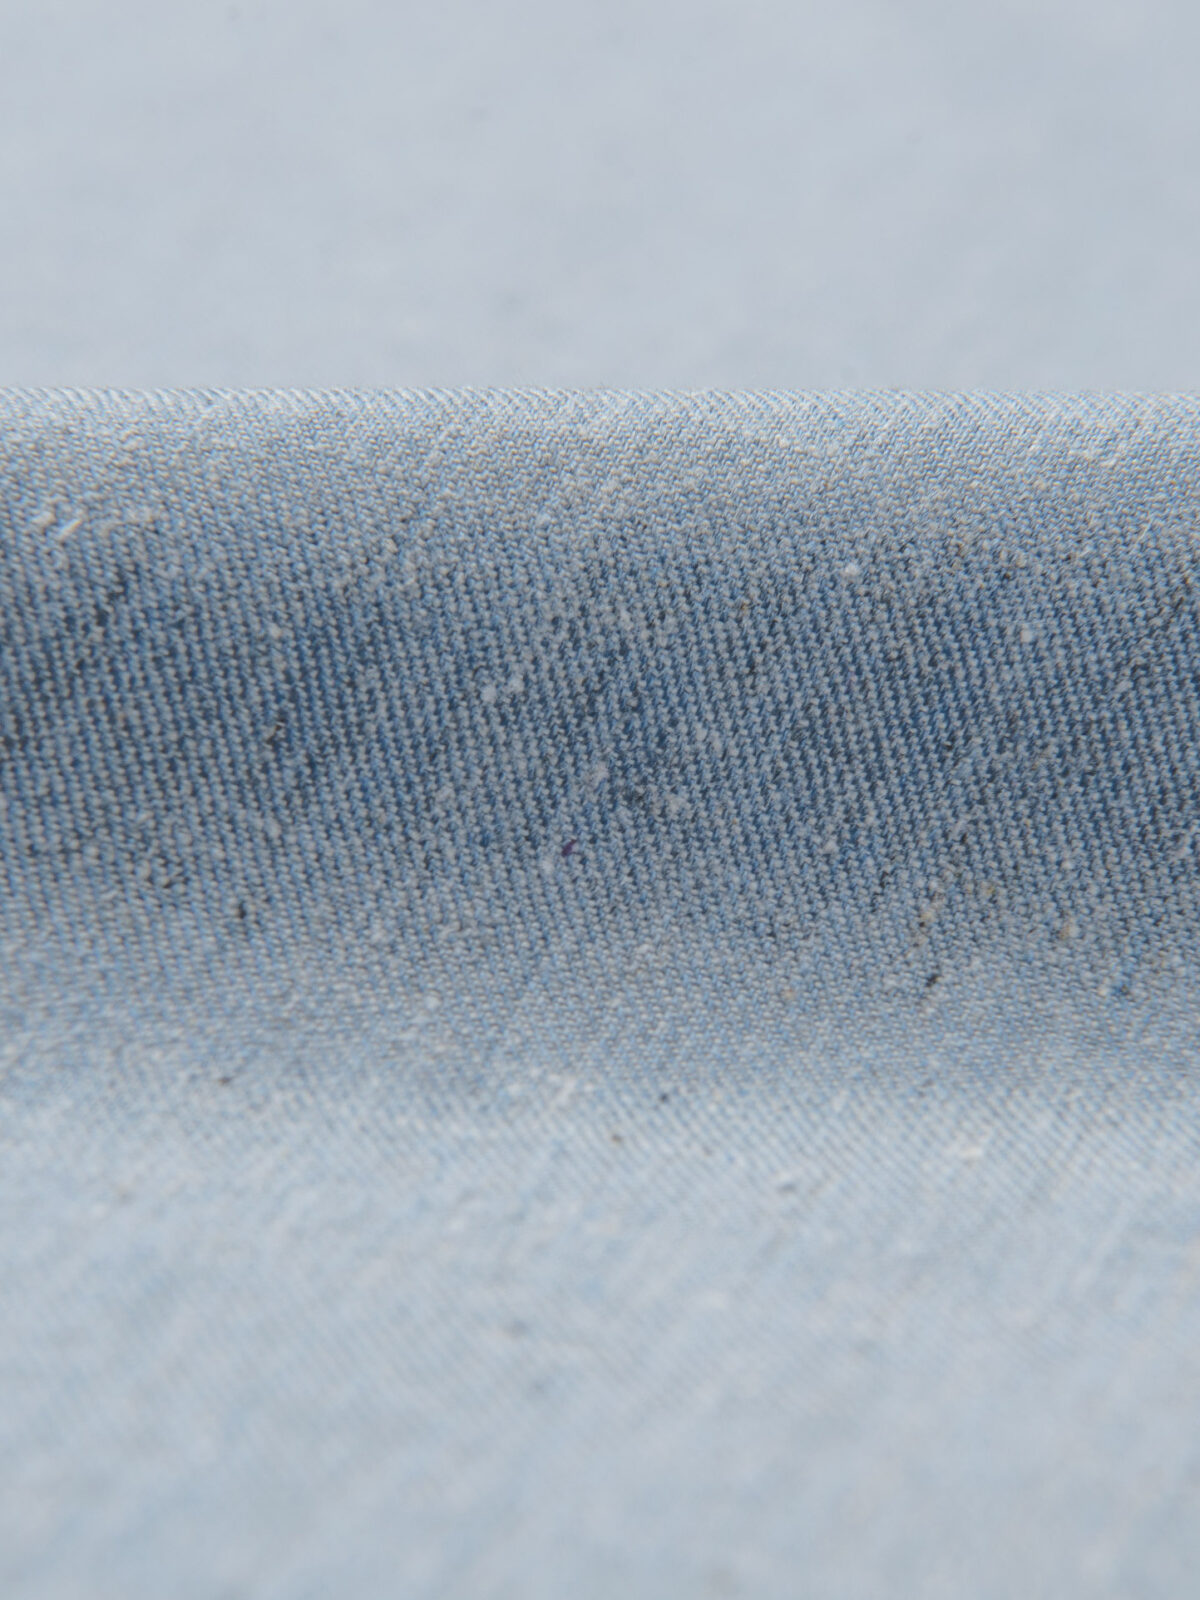 Blue Denim Fabric by the yard